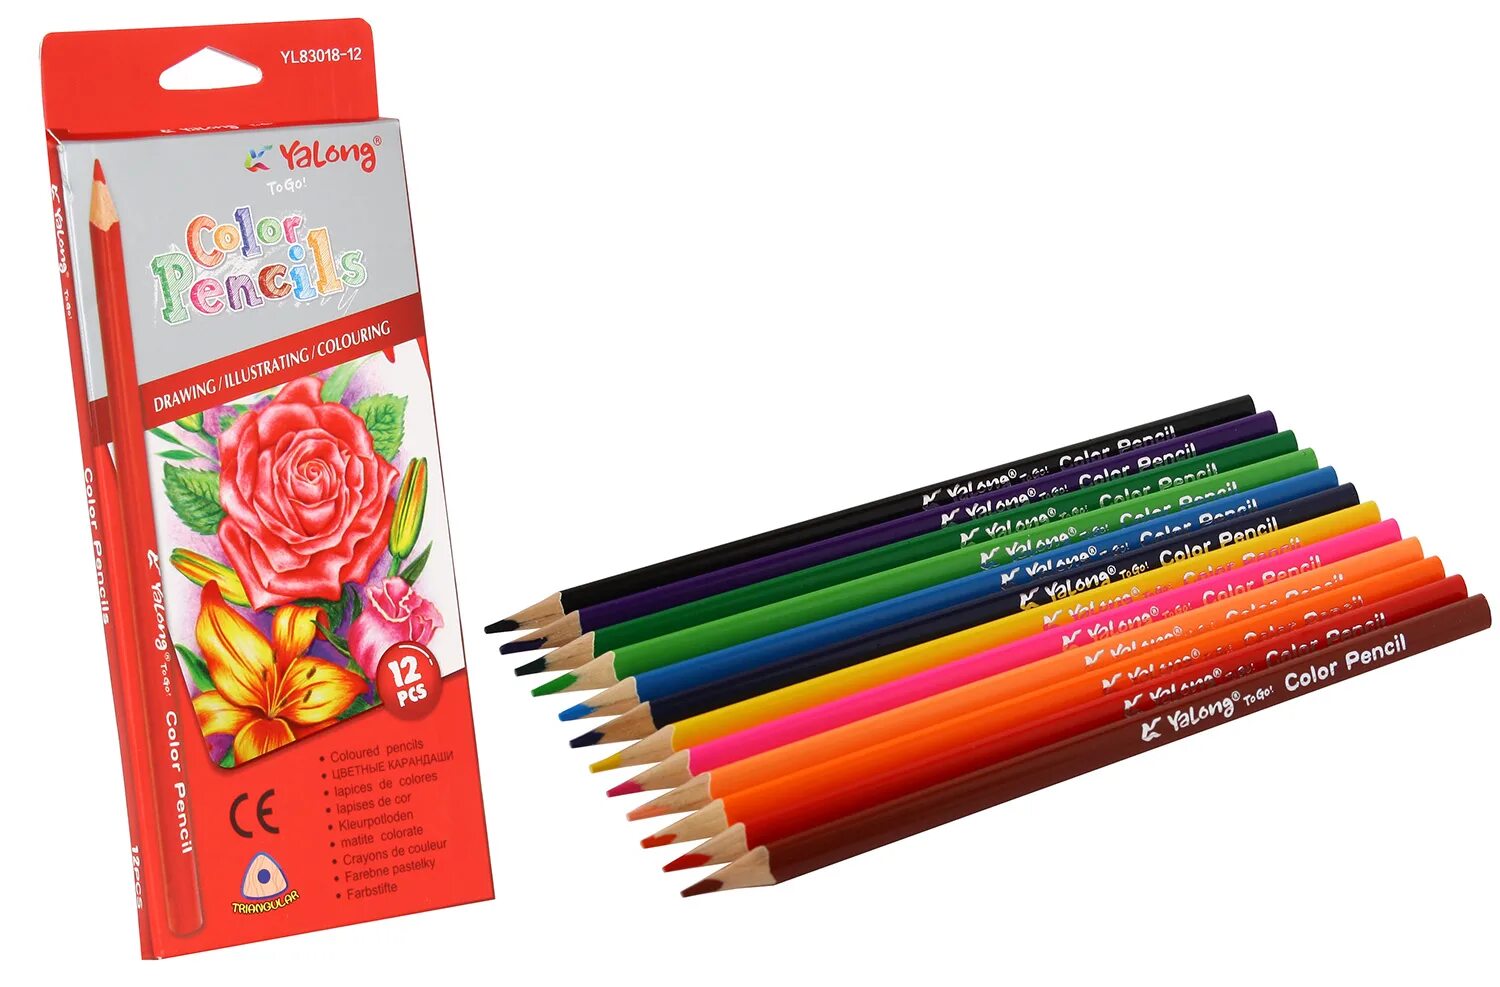 Цветные карандаши Yalong to go. Карандаши цветные Yalong 12 цветов. Карандаши цветные 12цв "Supersoft. Замки". Yalong Color Pencil to go! Yl81500 трехгранные. Go pencil